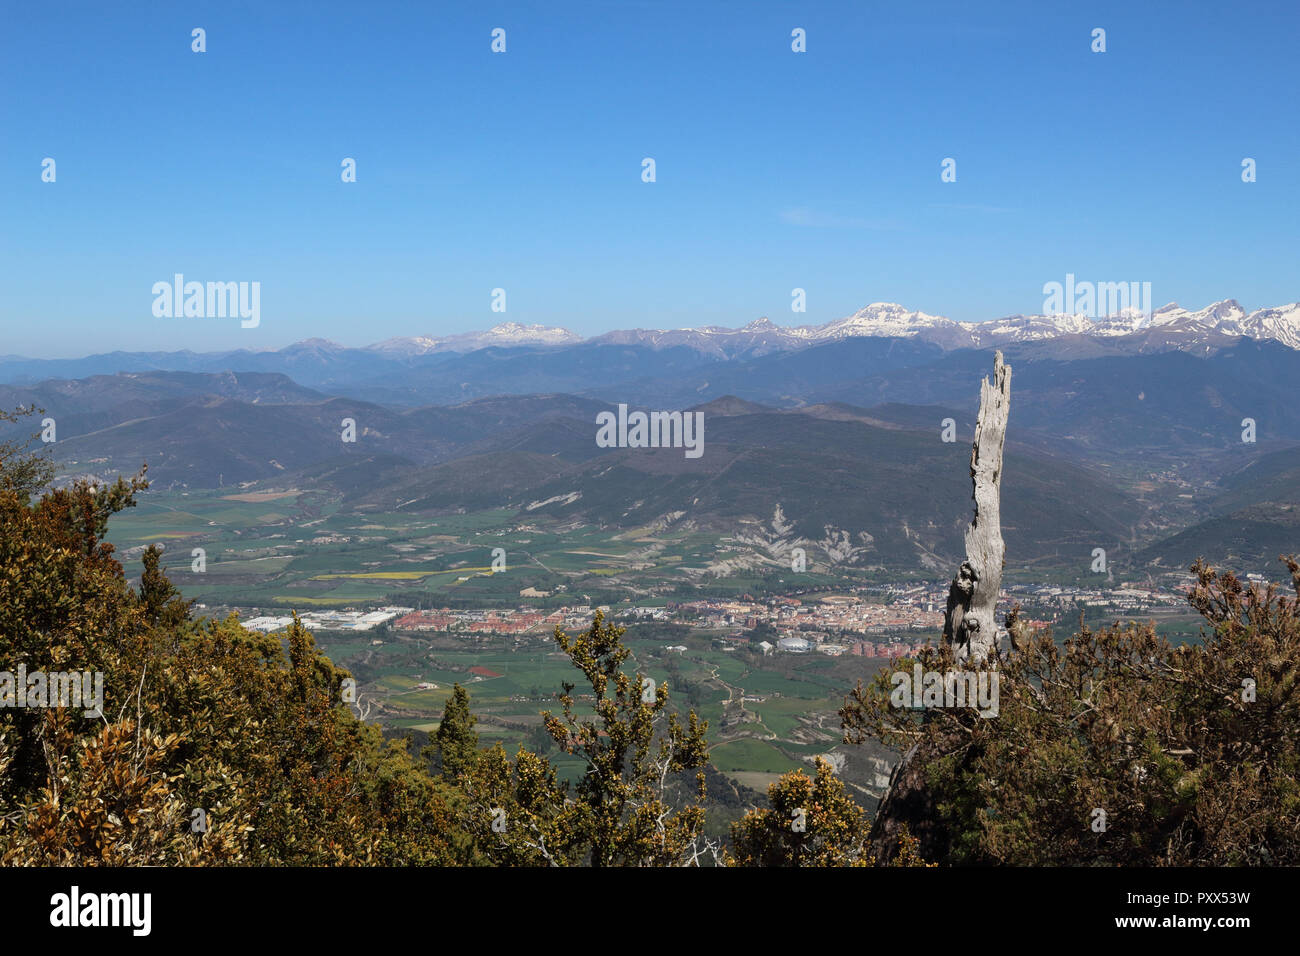 Eine Landschaft mit schneebedeckten Pyrenäen und ein weites Tal mit blauen bewölkten Himmel und einige Büsche in den Peña Oroel, Region Aragon, Spanien Stockfoto